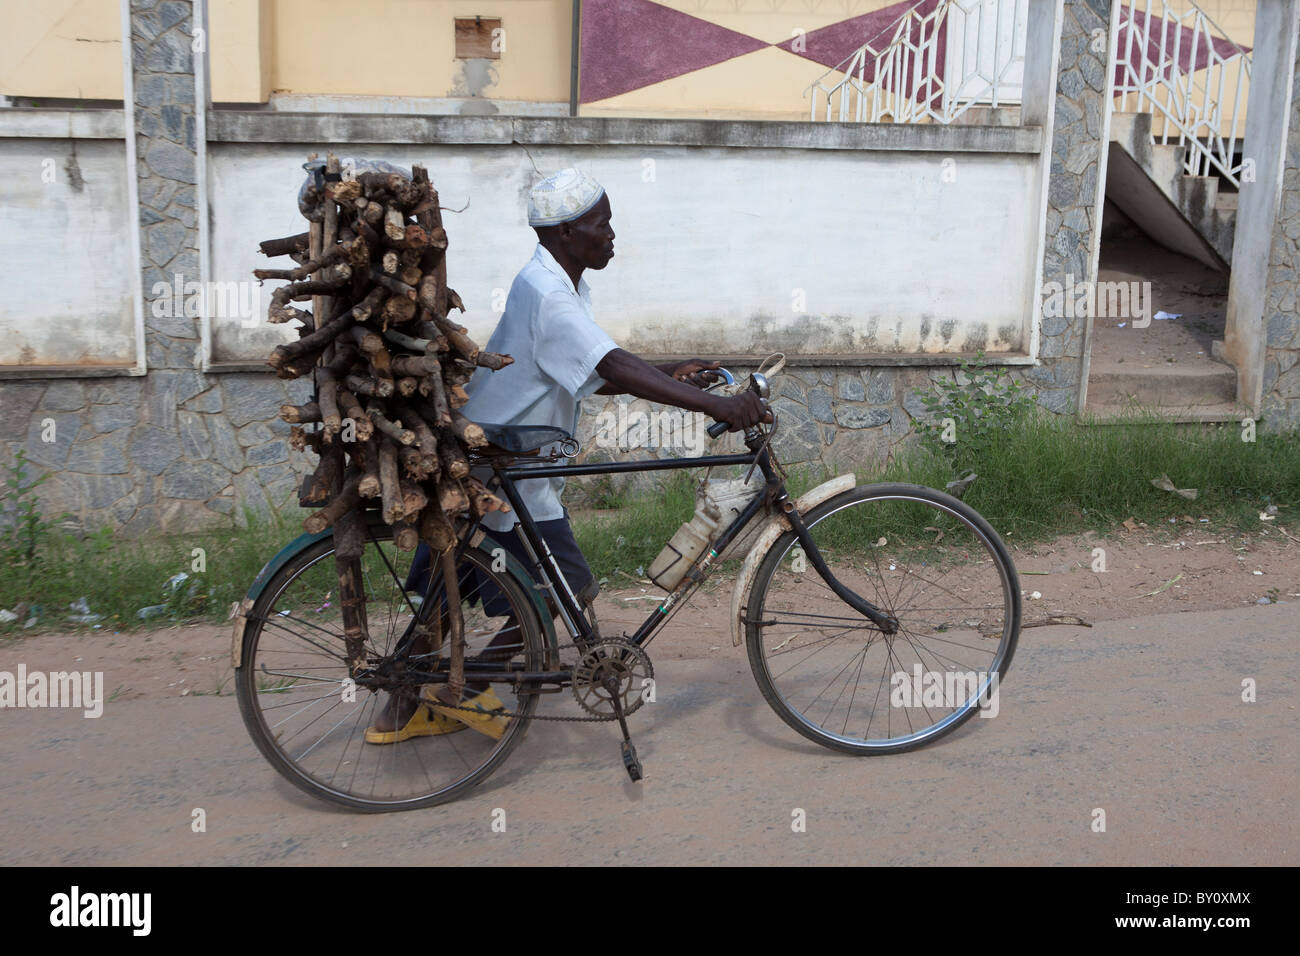 NAMPULA, MOZAMBIQUE, Mai 2010 : Un vendeur de bois de chauffage de la ville, apporte un cycle de cinq heures en voiture de son domicile. Banque D'Images